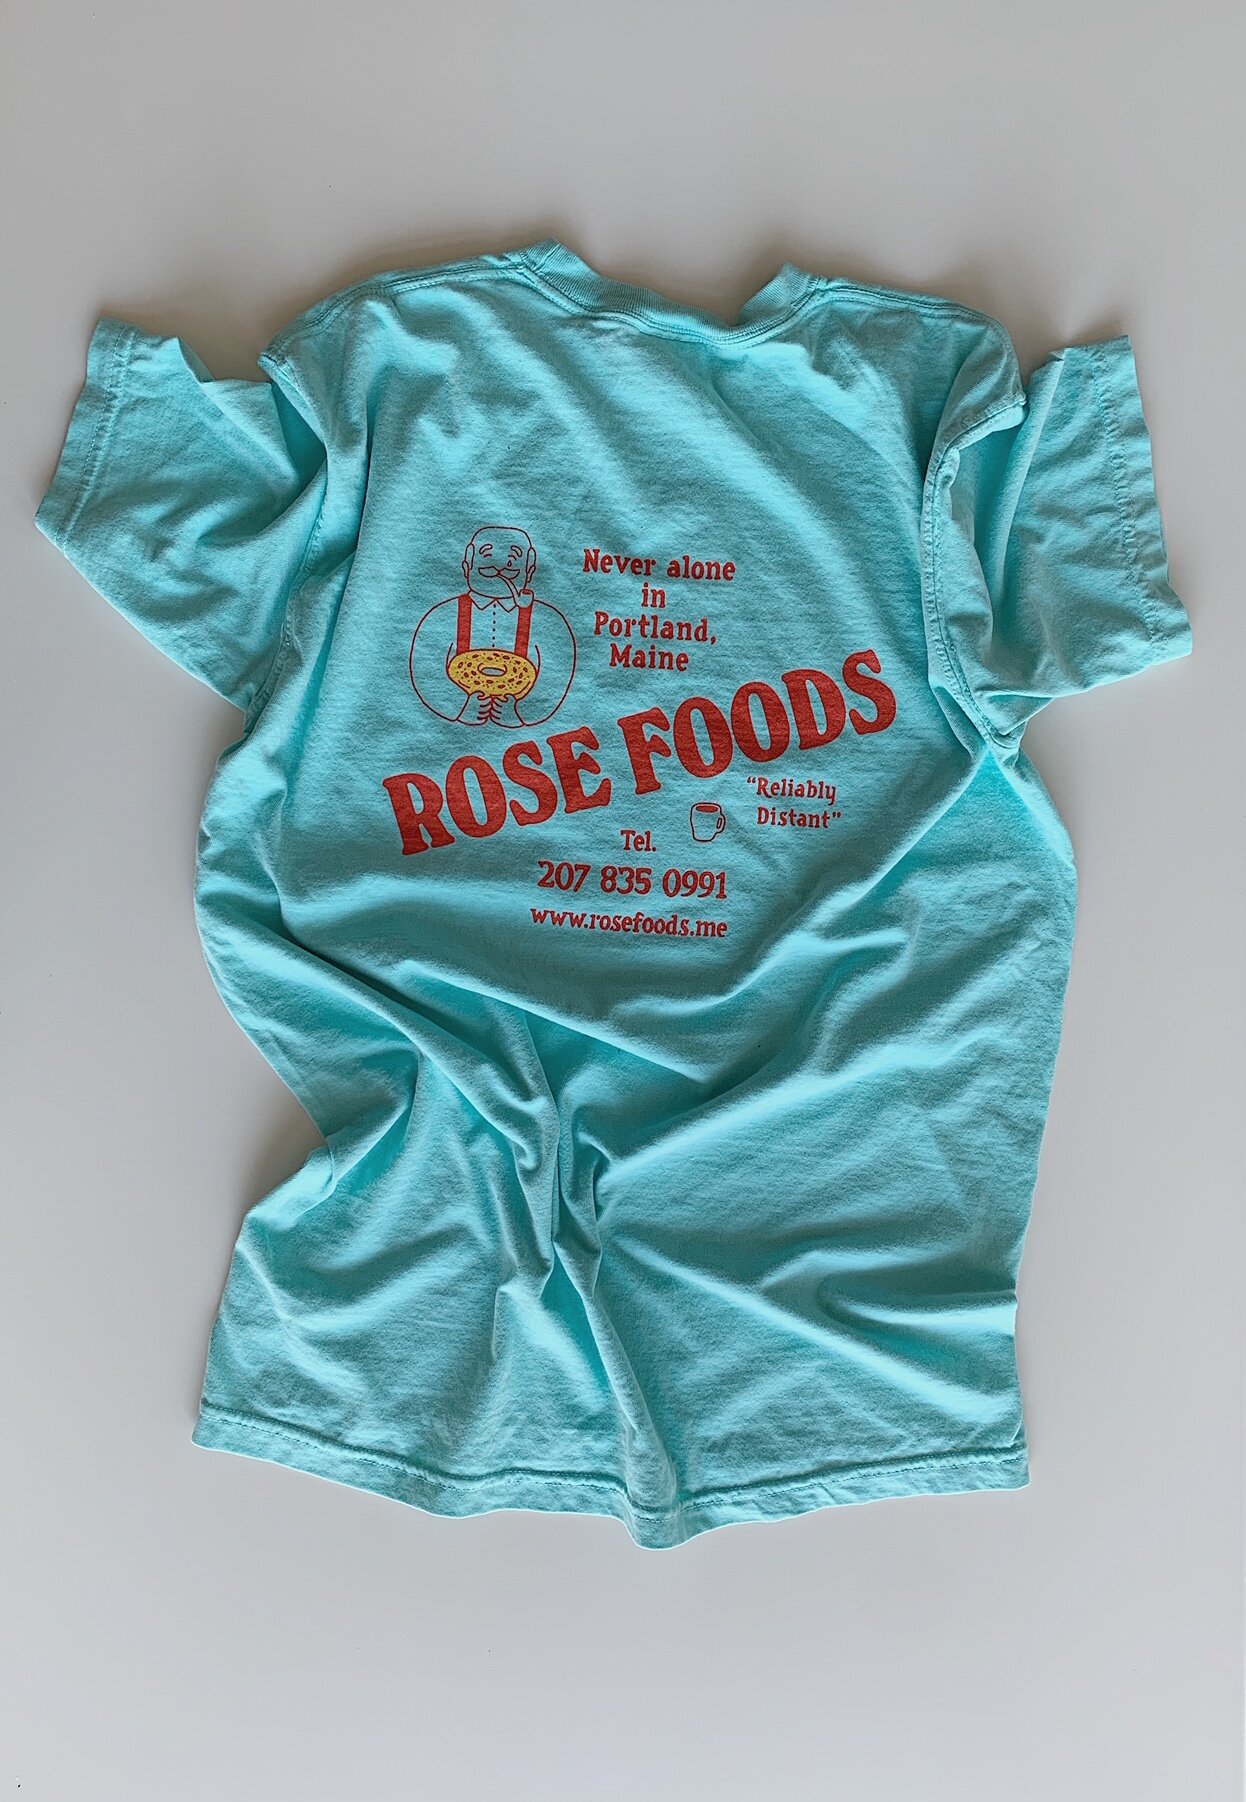 Shop — Rose Foods